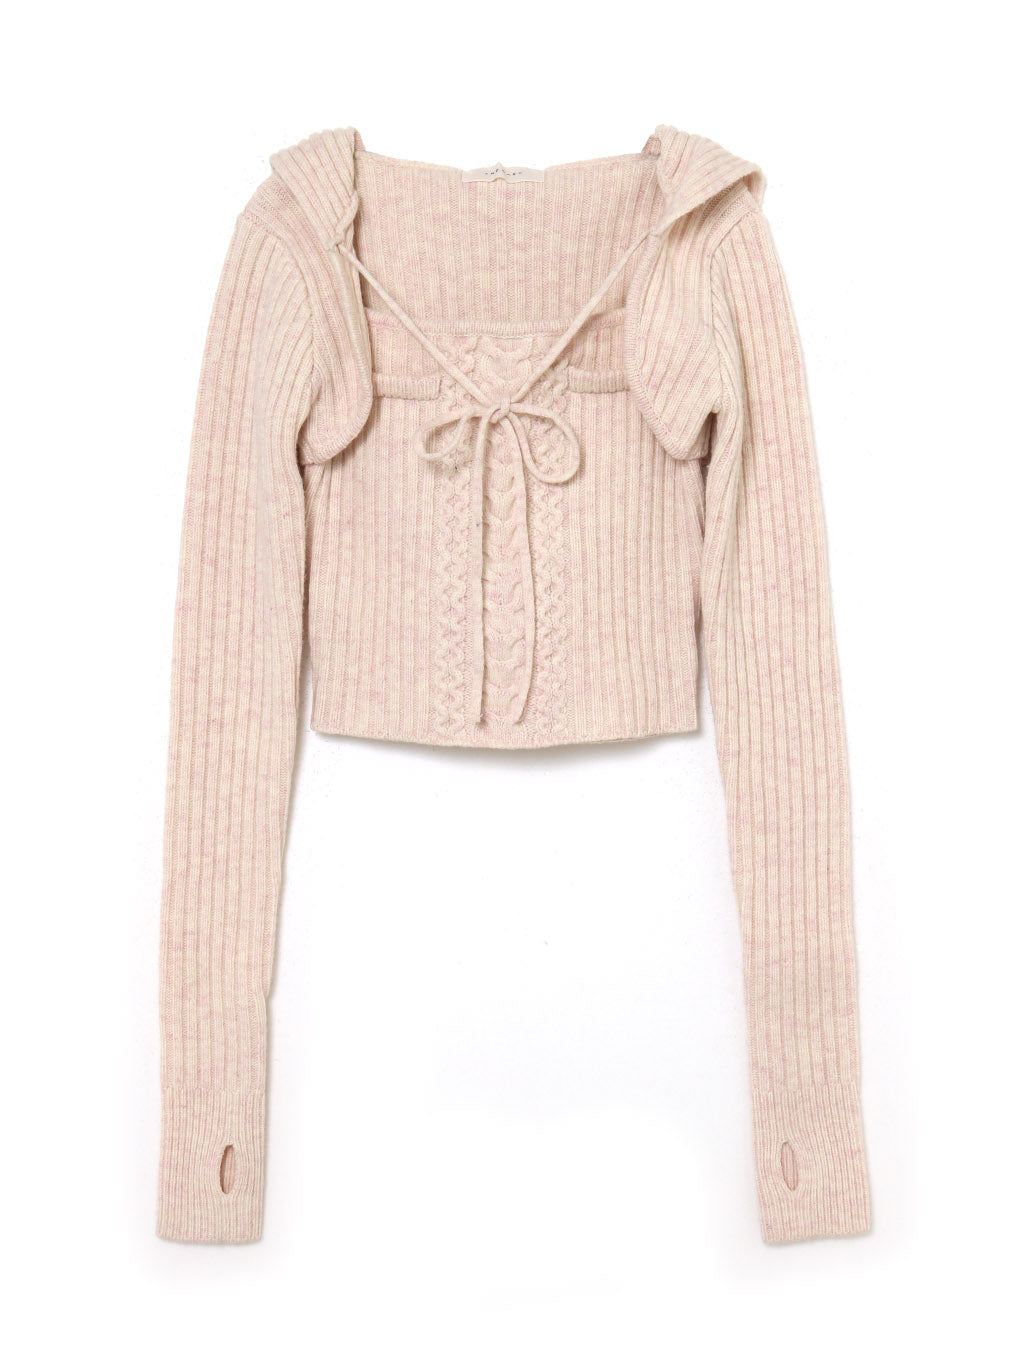 13,600円andmary Hazel knit set pink